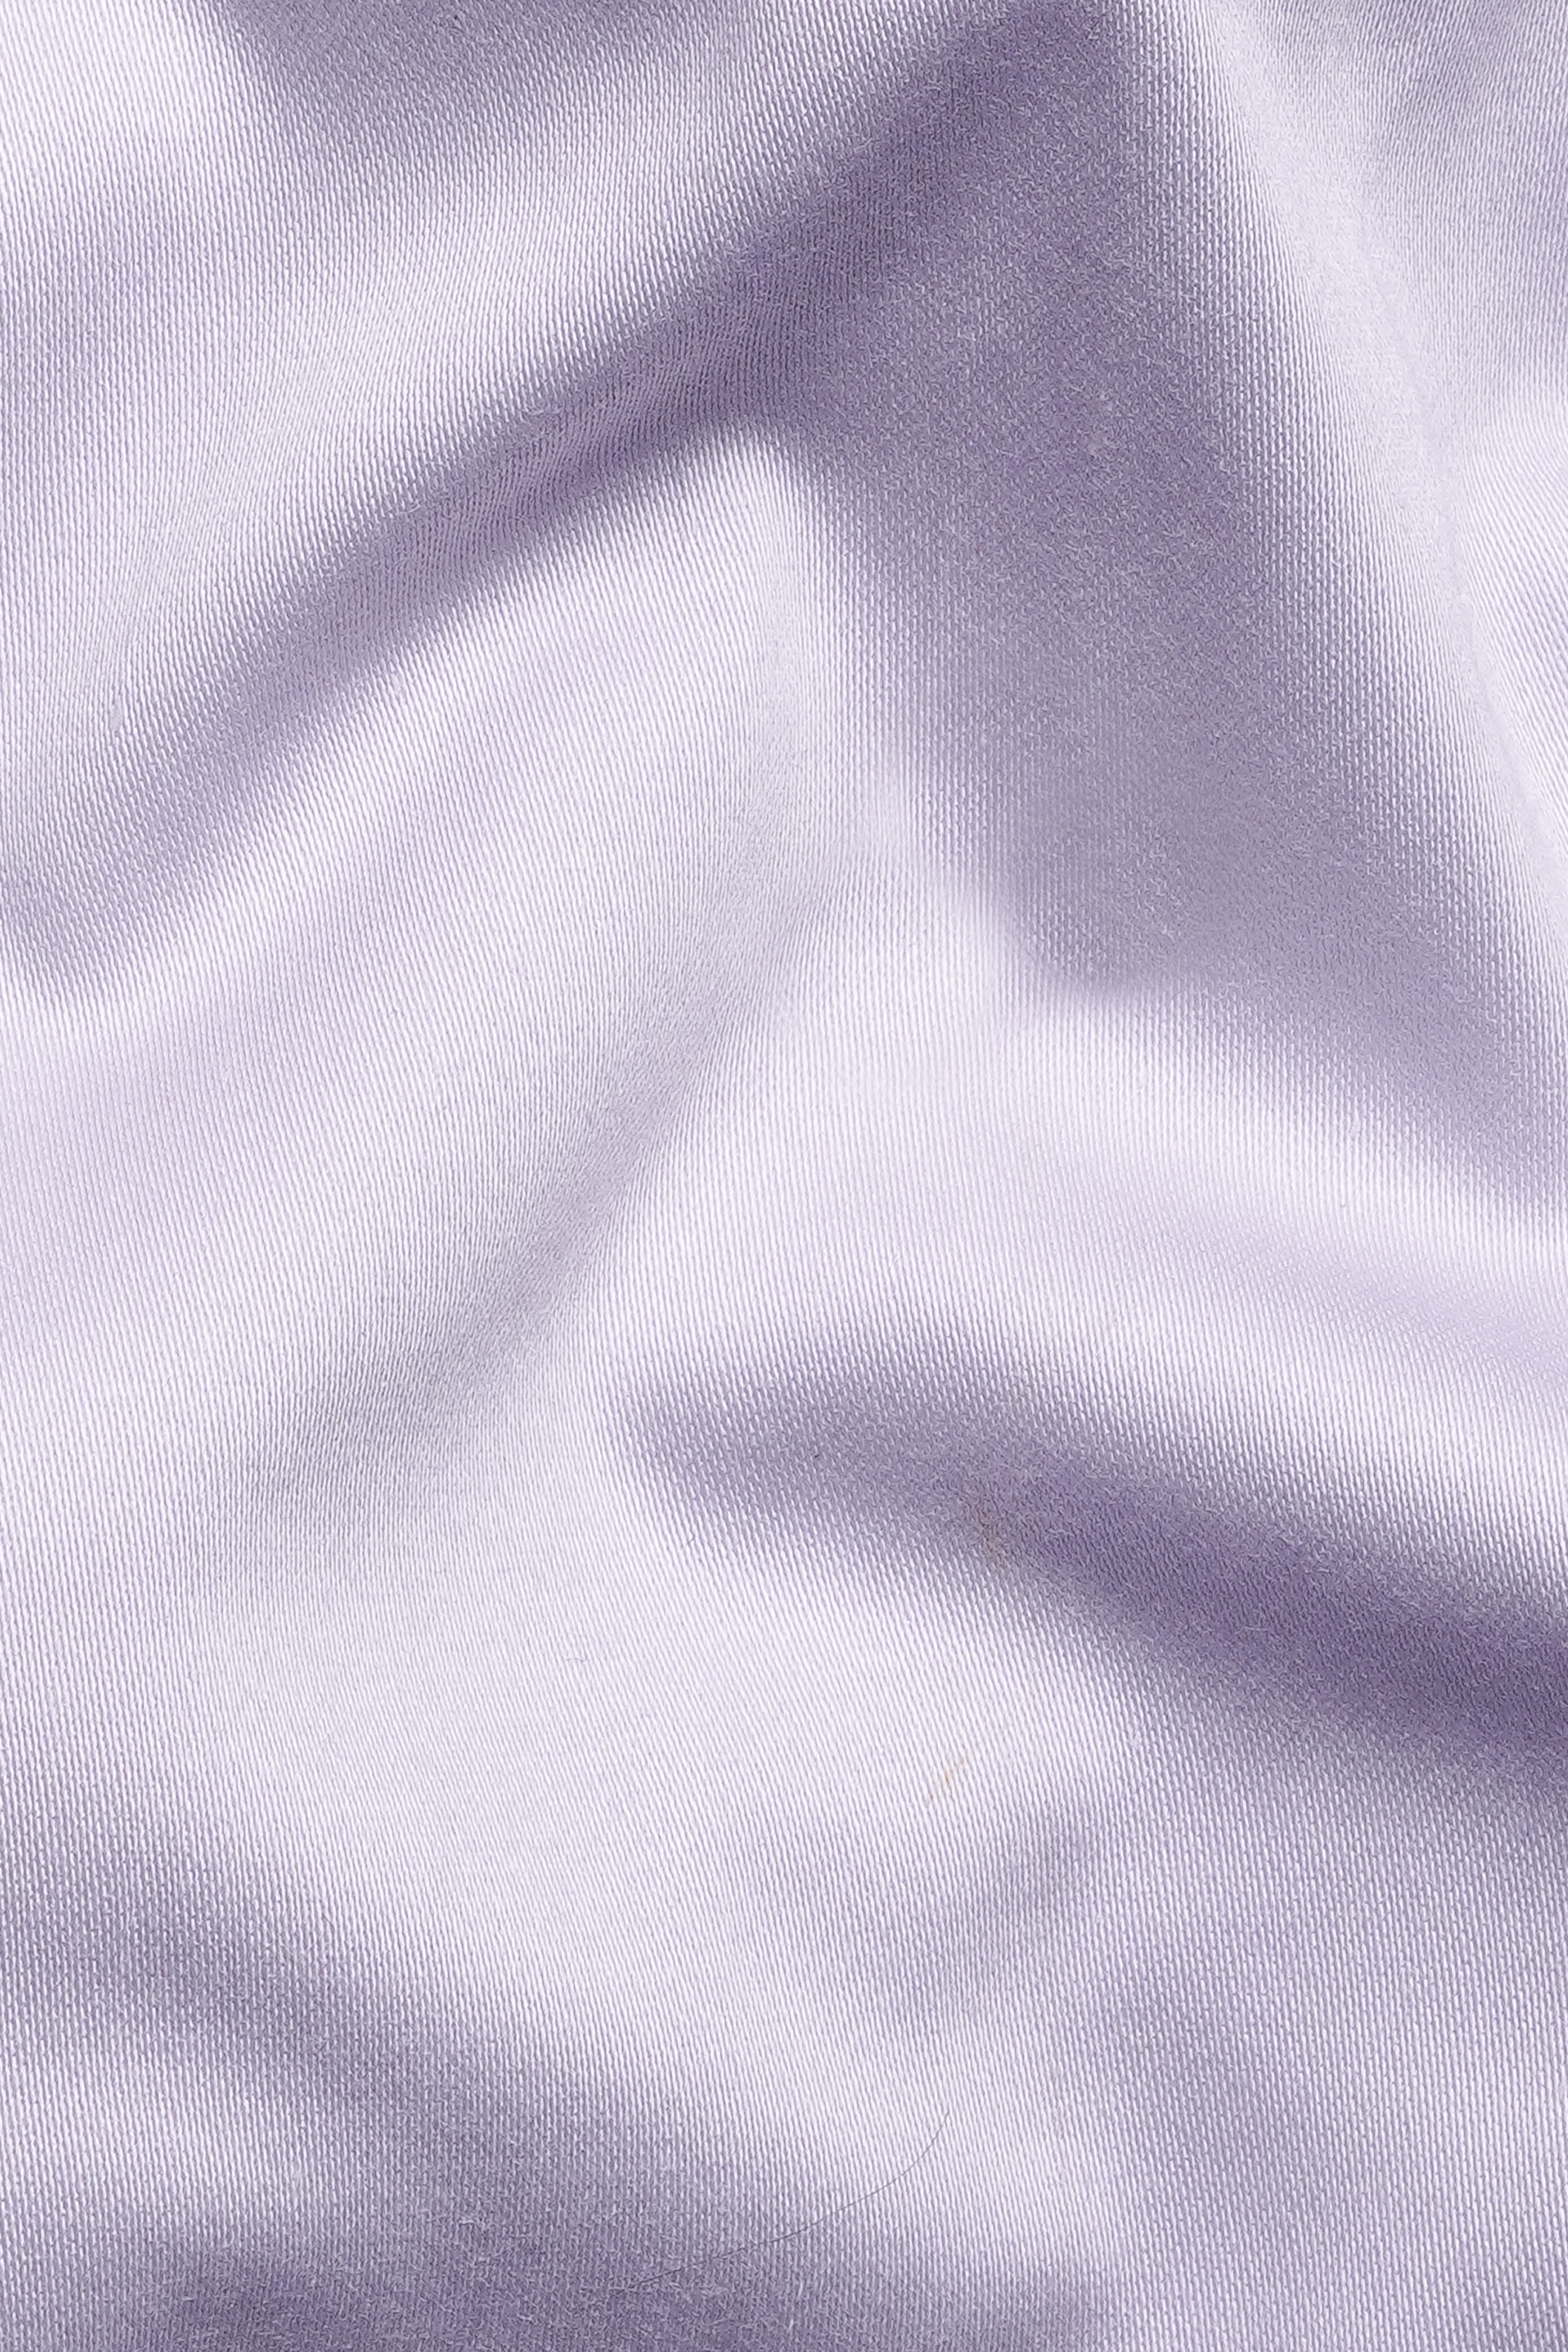 Snuff Lavender Premium Cotton Single Breasted Blazer